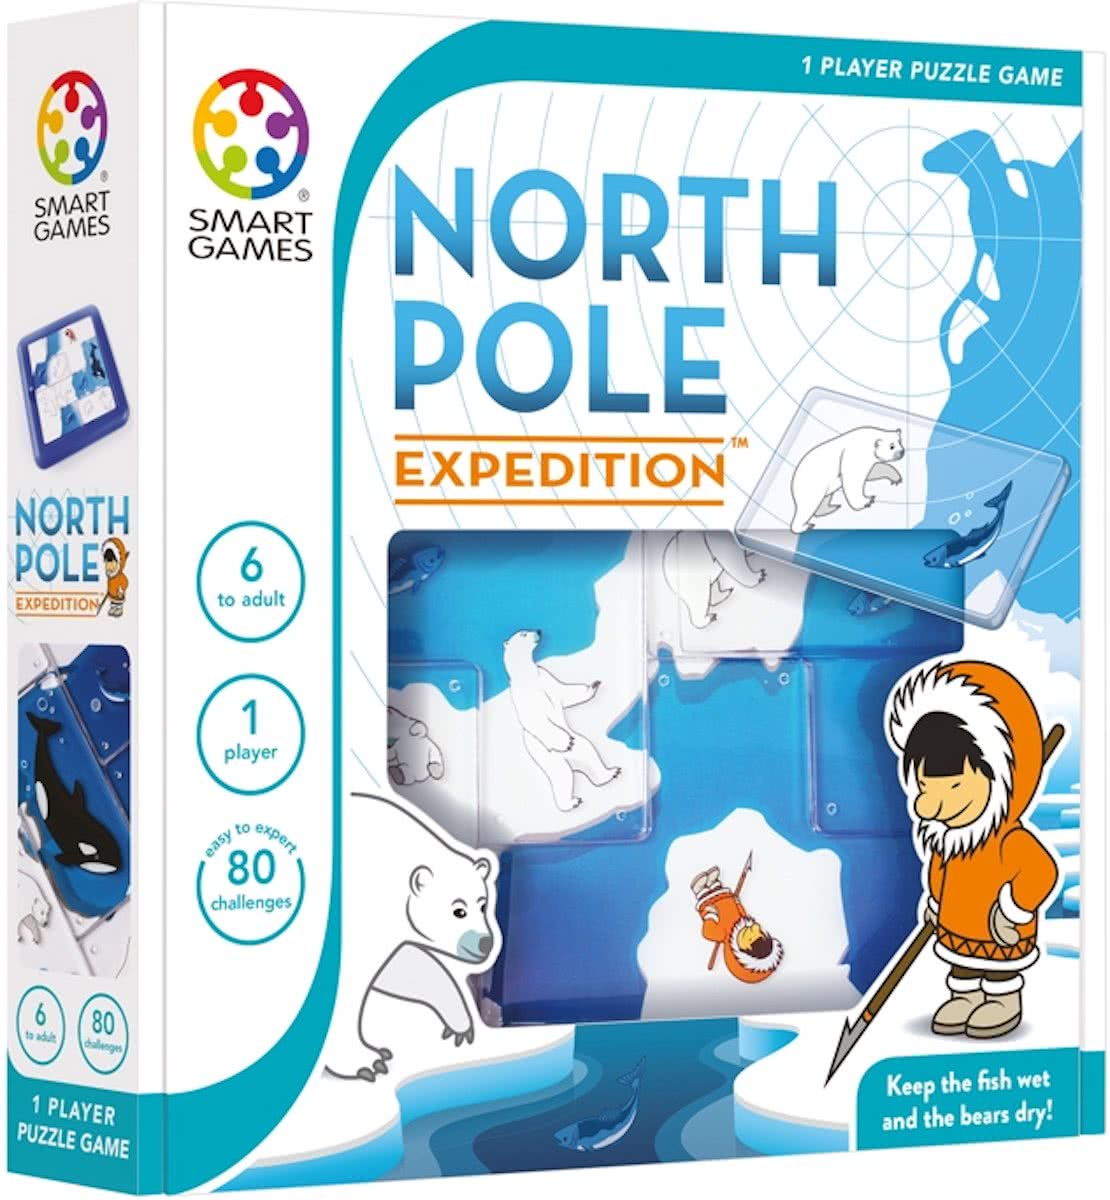 Je bekijkt nu Review + winactie: North Pole expedition